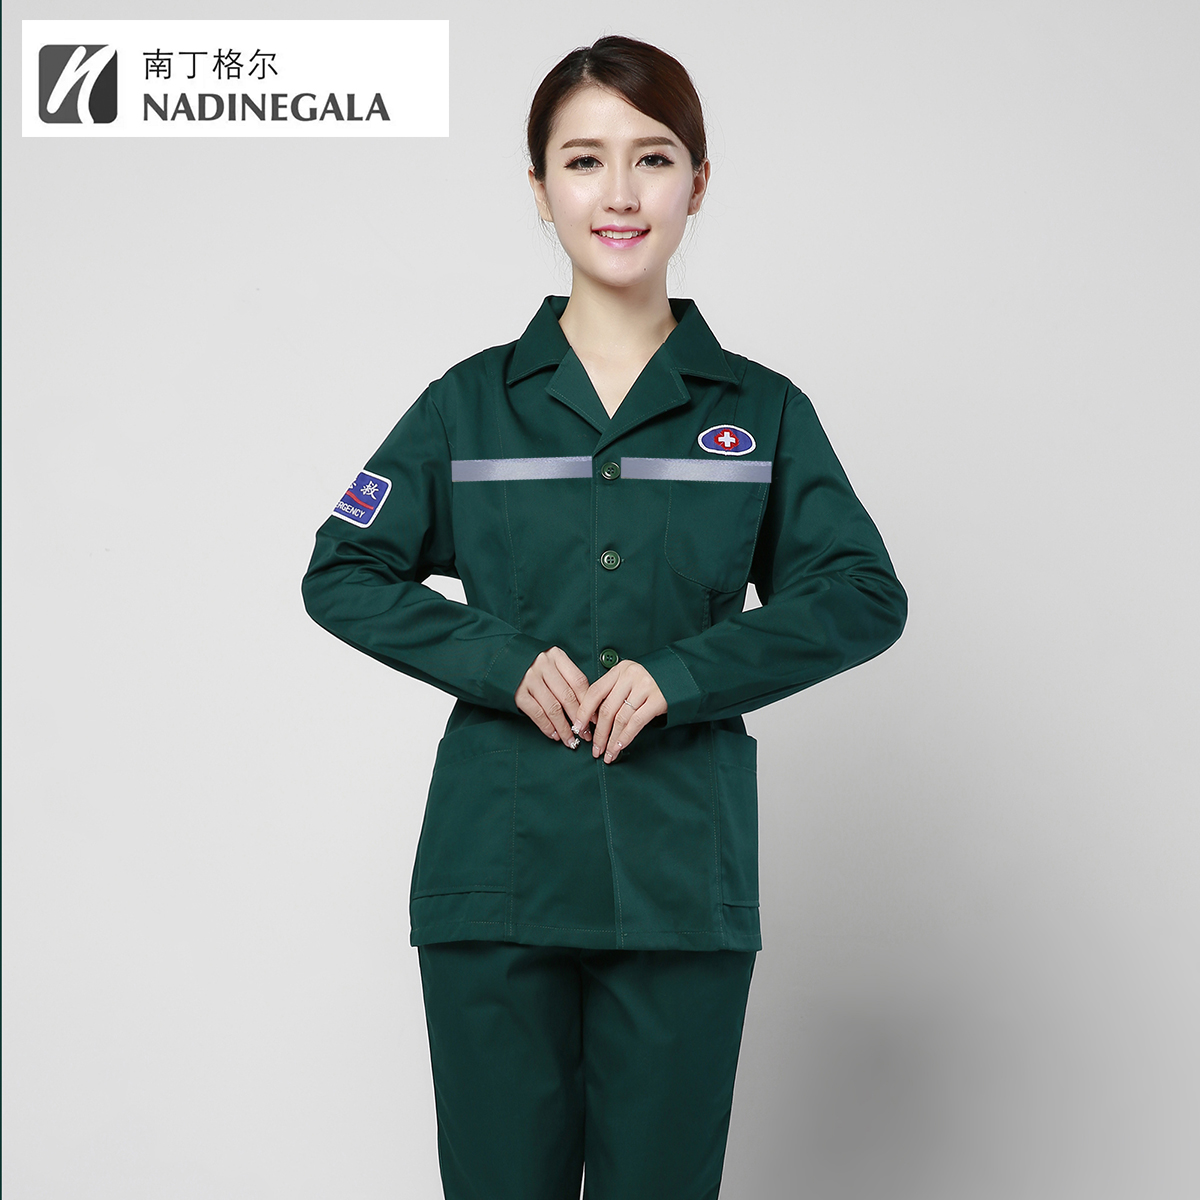 墨绿 长袖 120麻醉中心工作短袖 急救护士分体套装 护士服分体套装